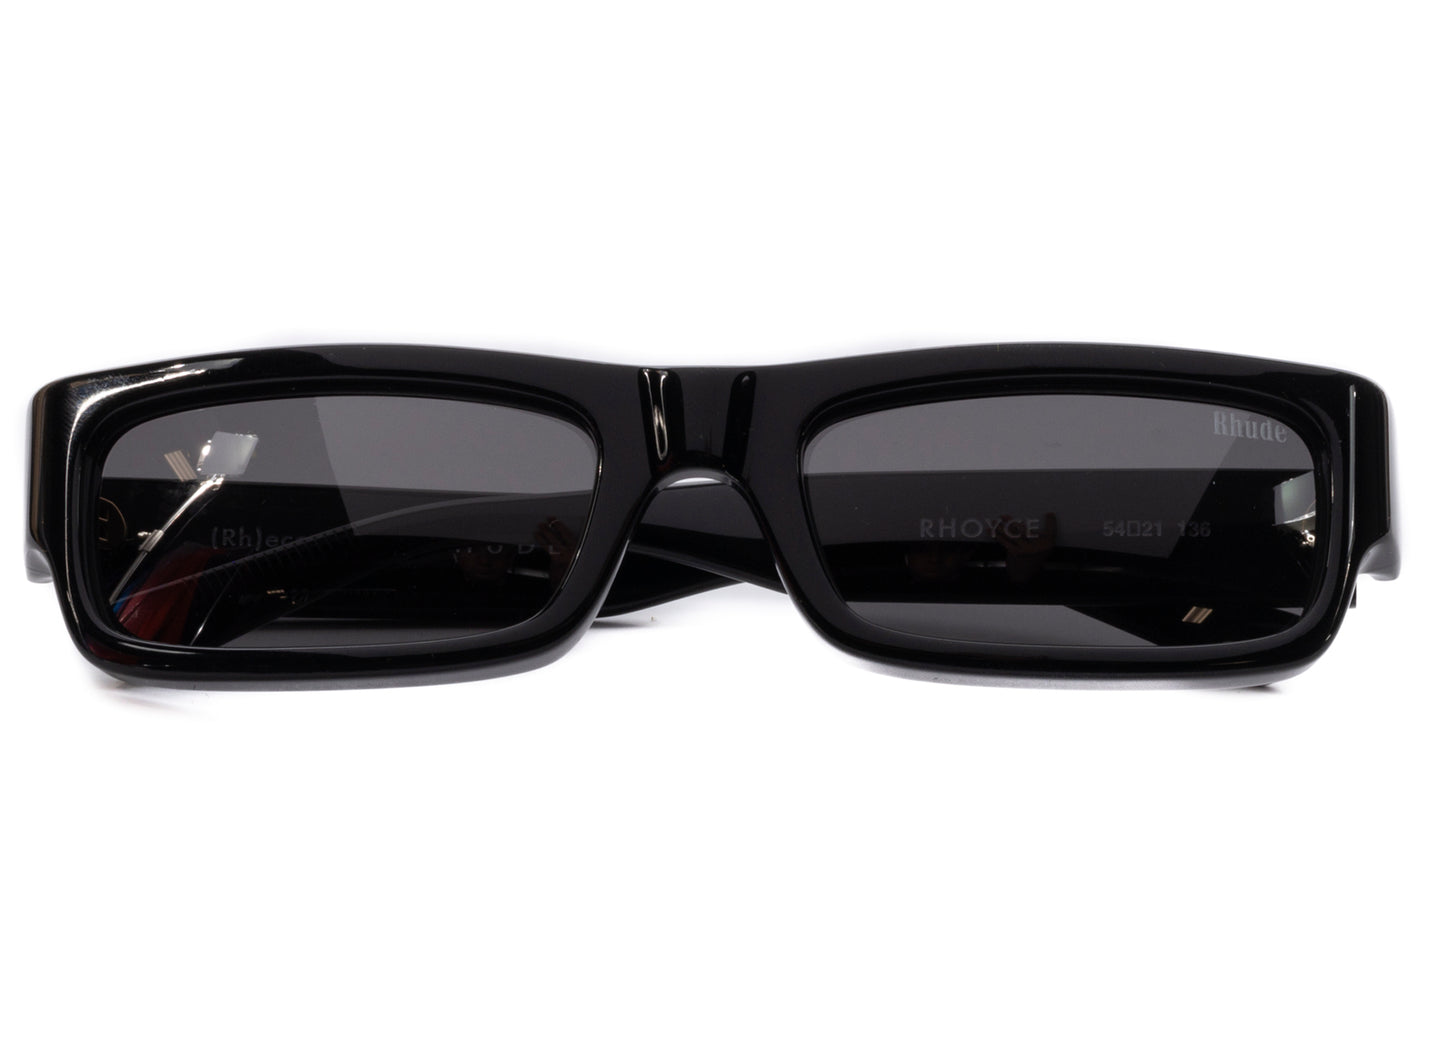 Rhude Rhoyce Frame Sunglasses in Black